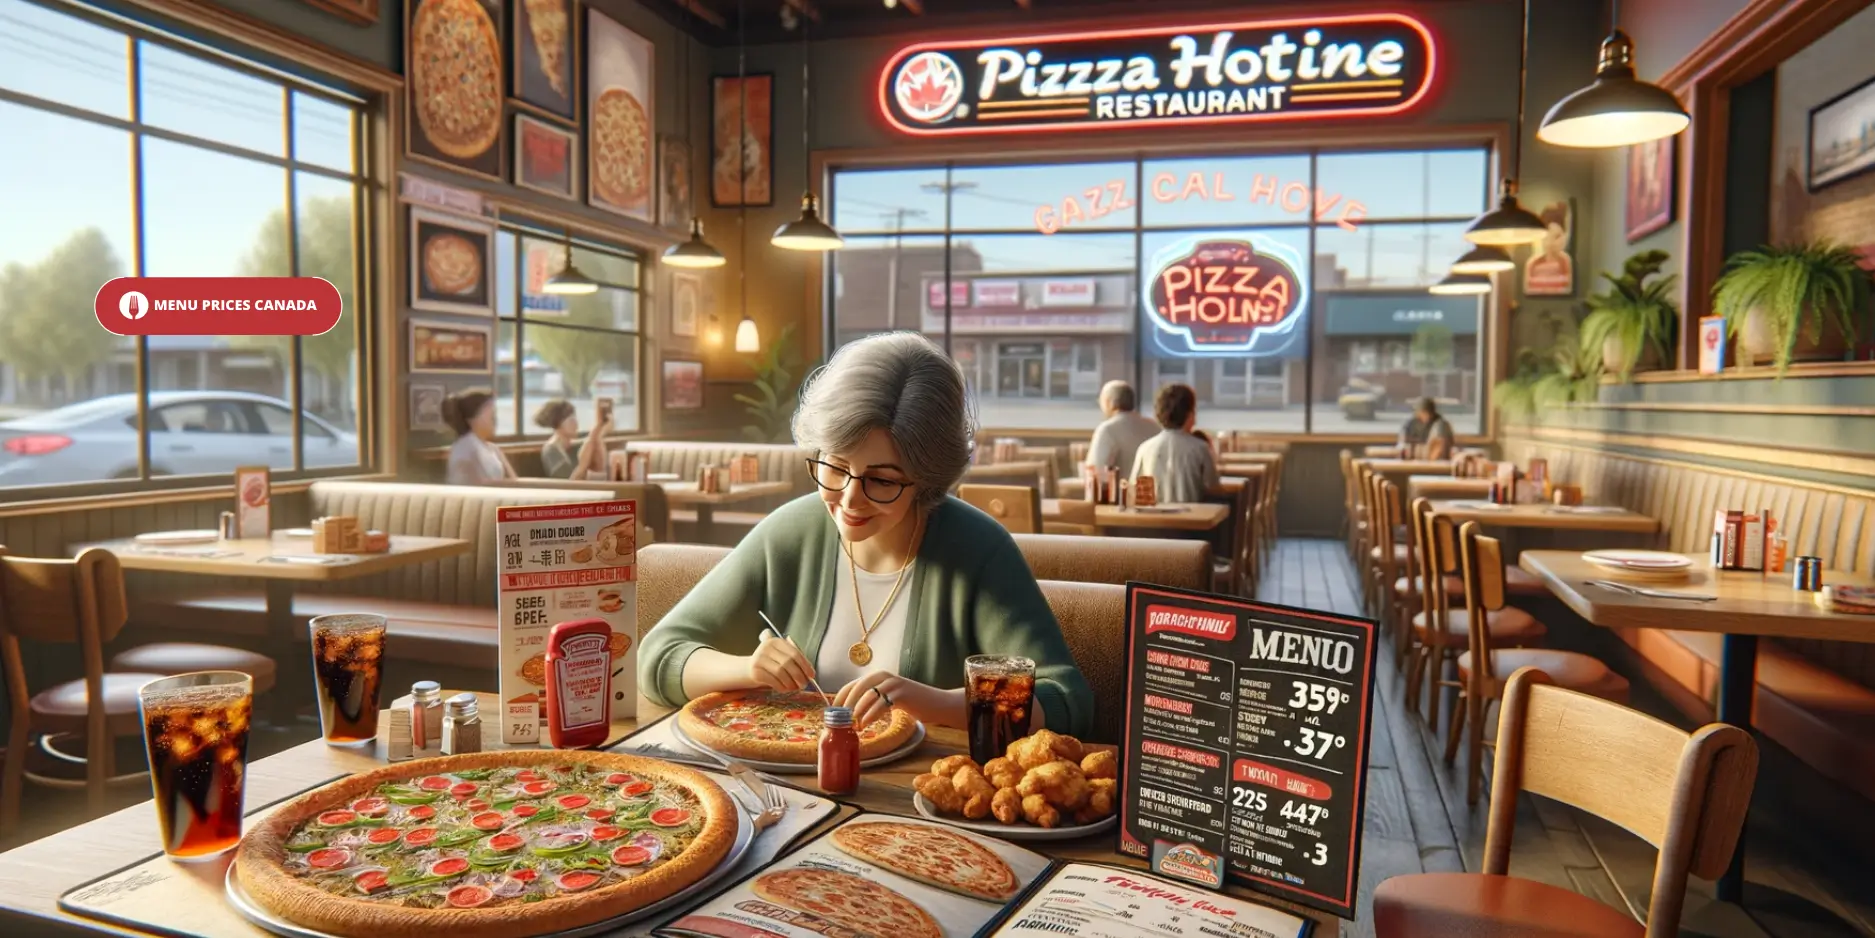 Pizza-Hotline-restaurant-Menu-Prices-Canada